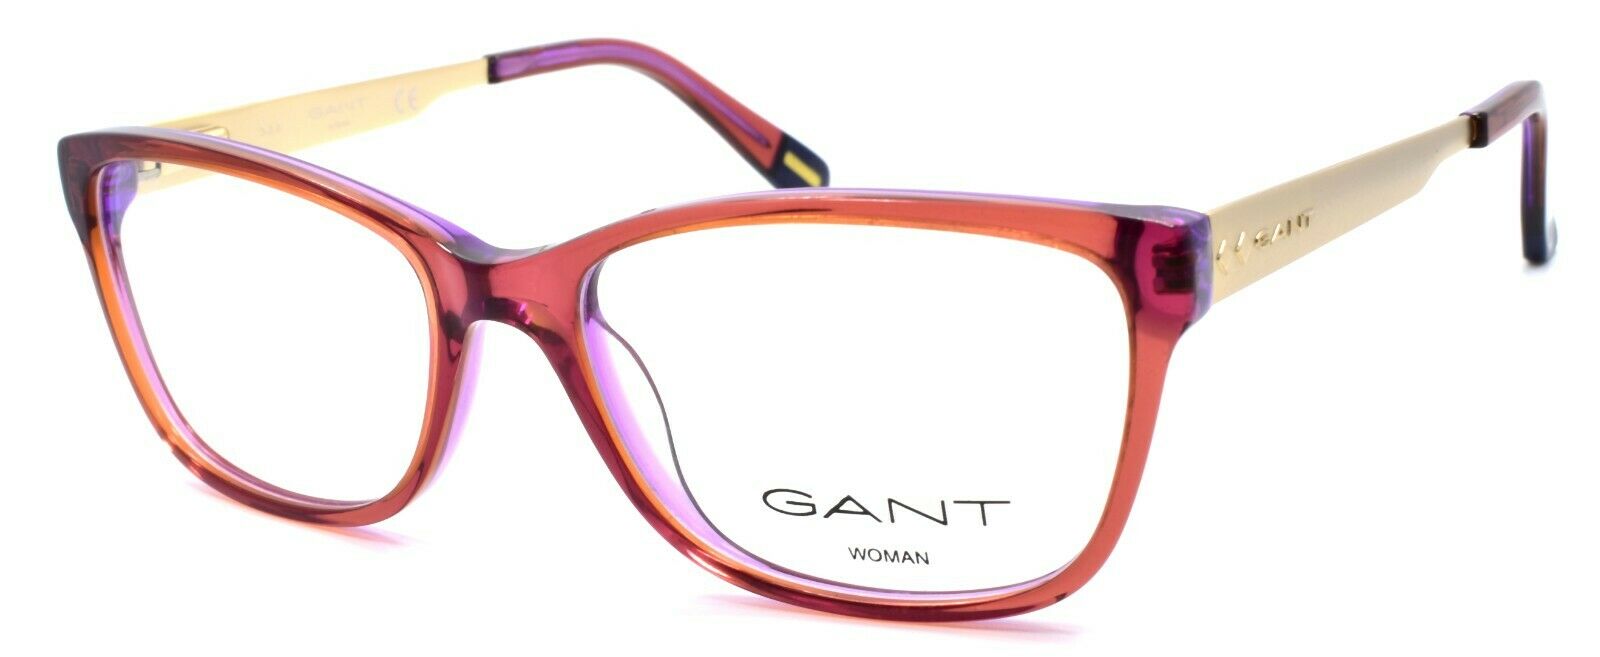 1-GANT GA4060 083 Women's Eyeglasses Frames 52-16-135 Violet / Gold-664689800896-IKSpecs